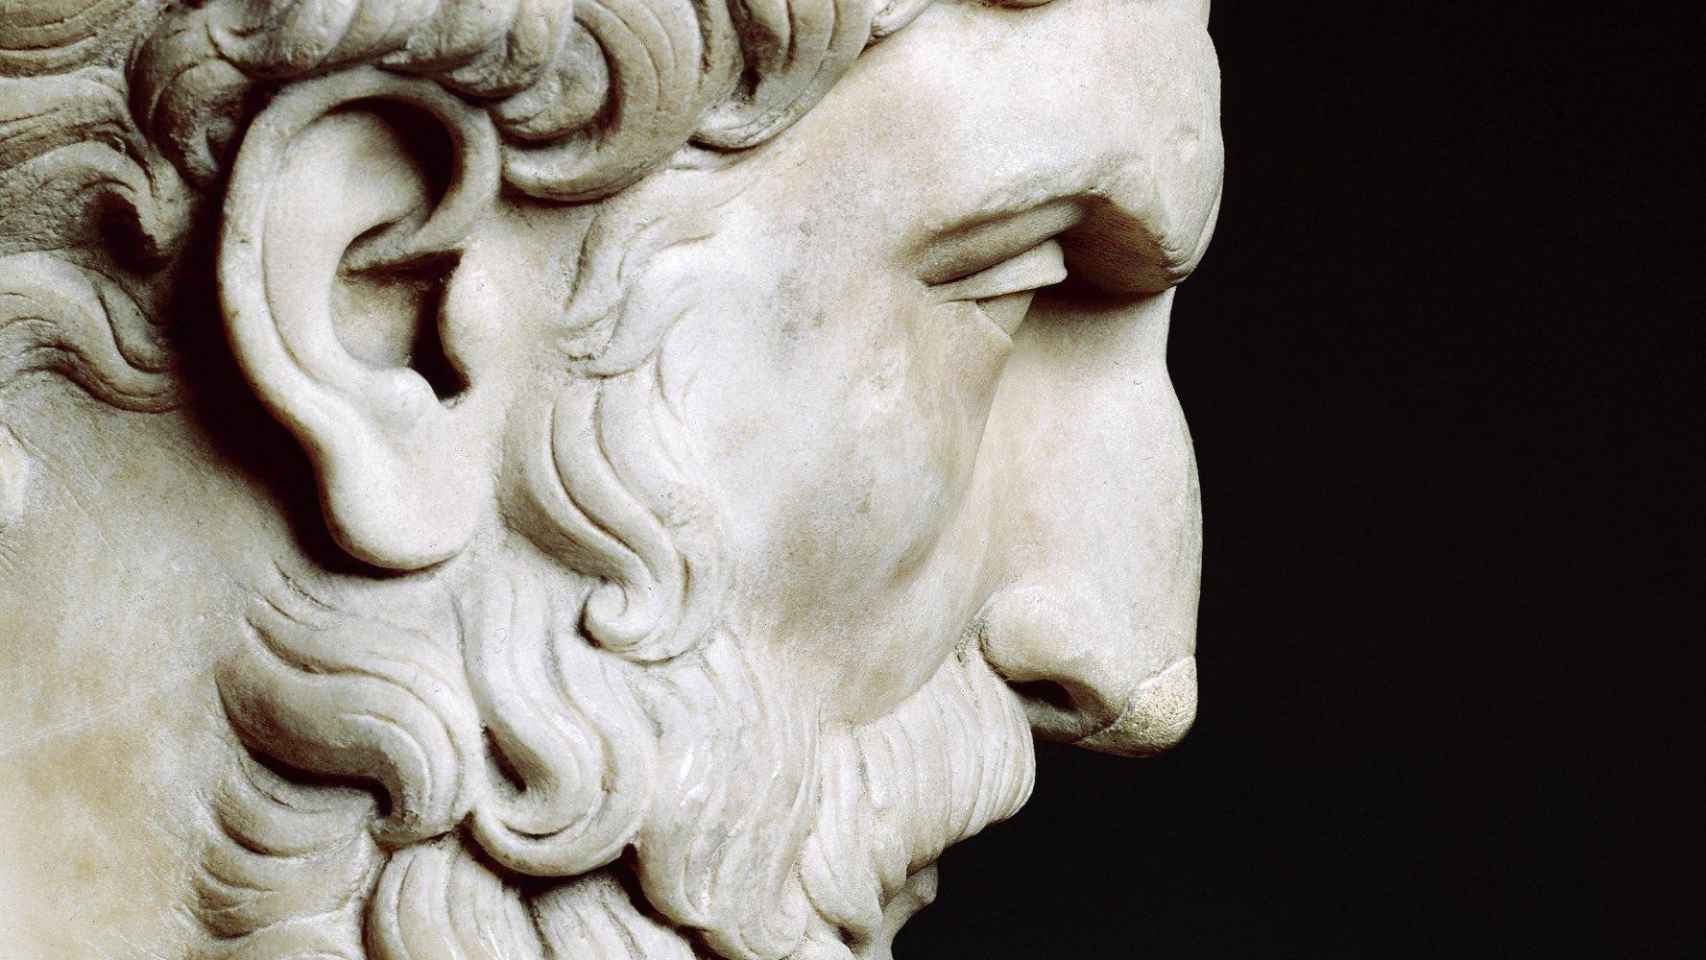 Copia romana del busto griego de Epicuro del siglo II d.C.